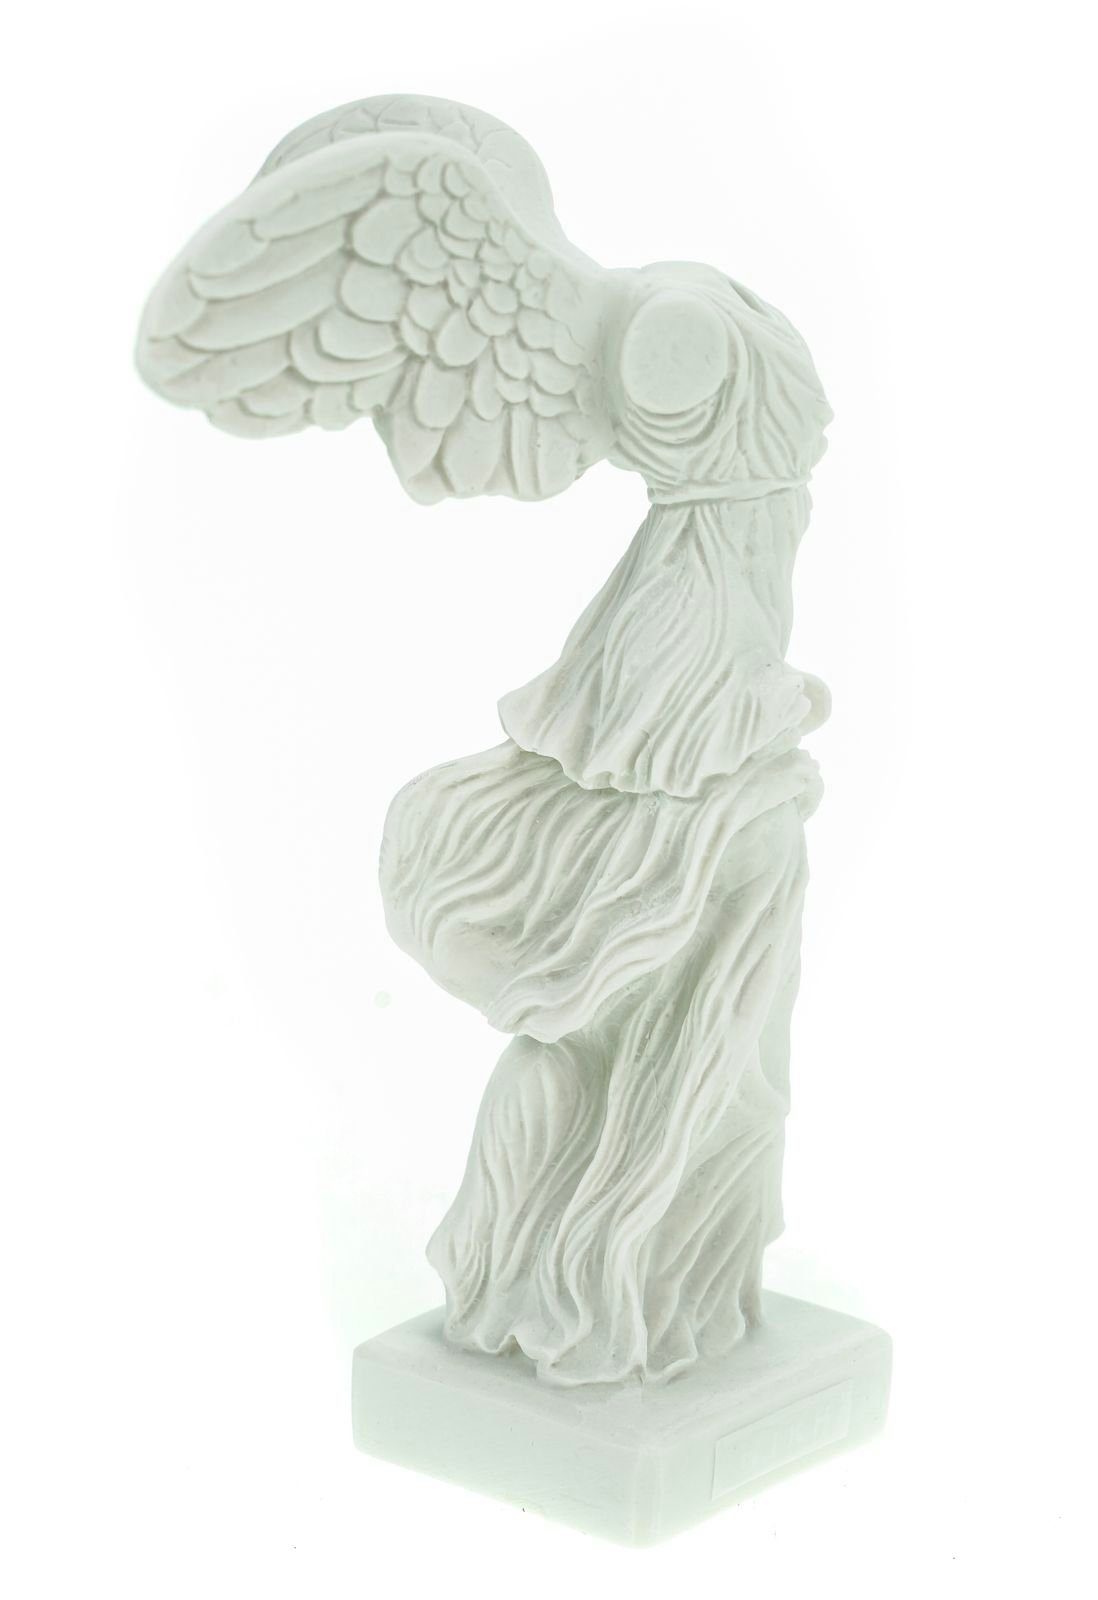 Kremers Schatzkiste Dekofigur Alabaster Siegesgöttin Nike von Samothrake Figur 20 cm